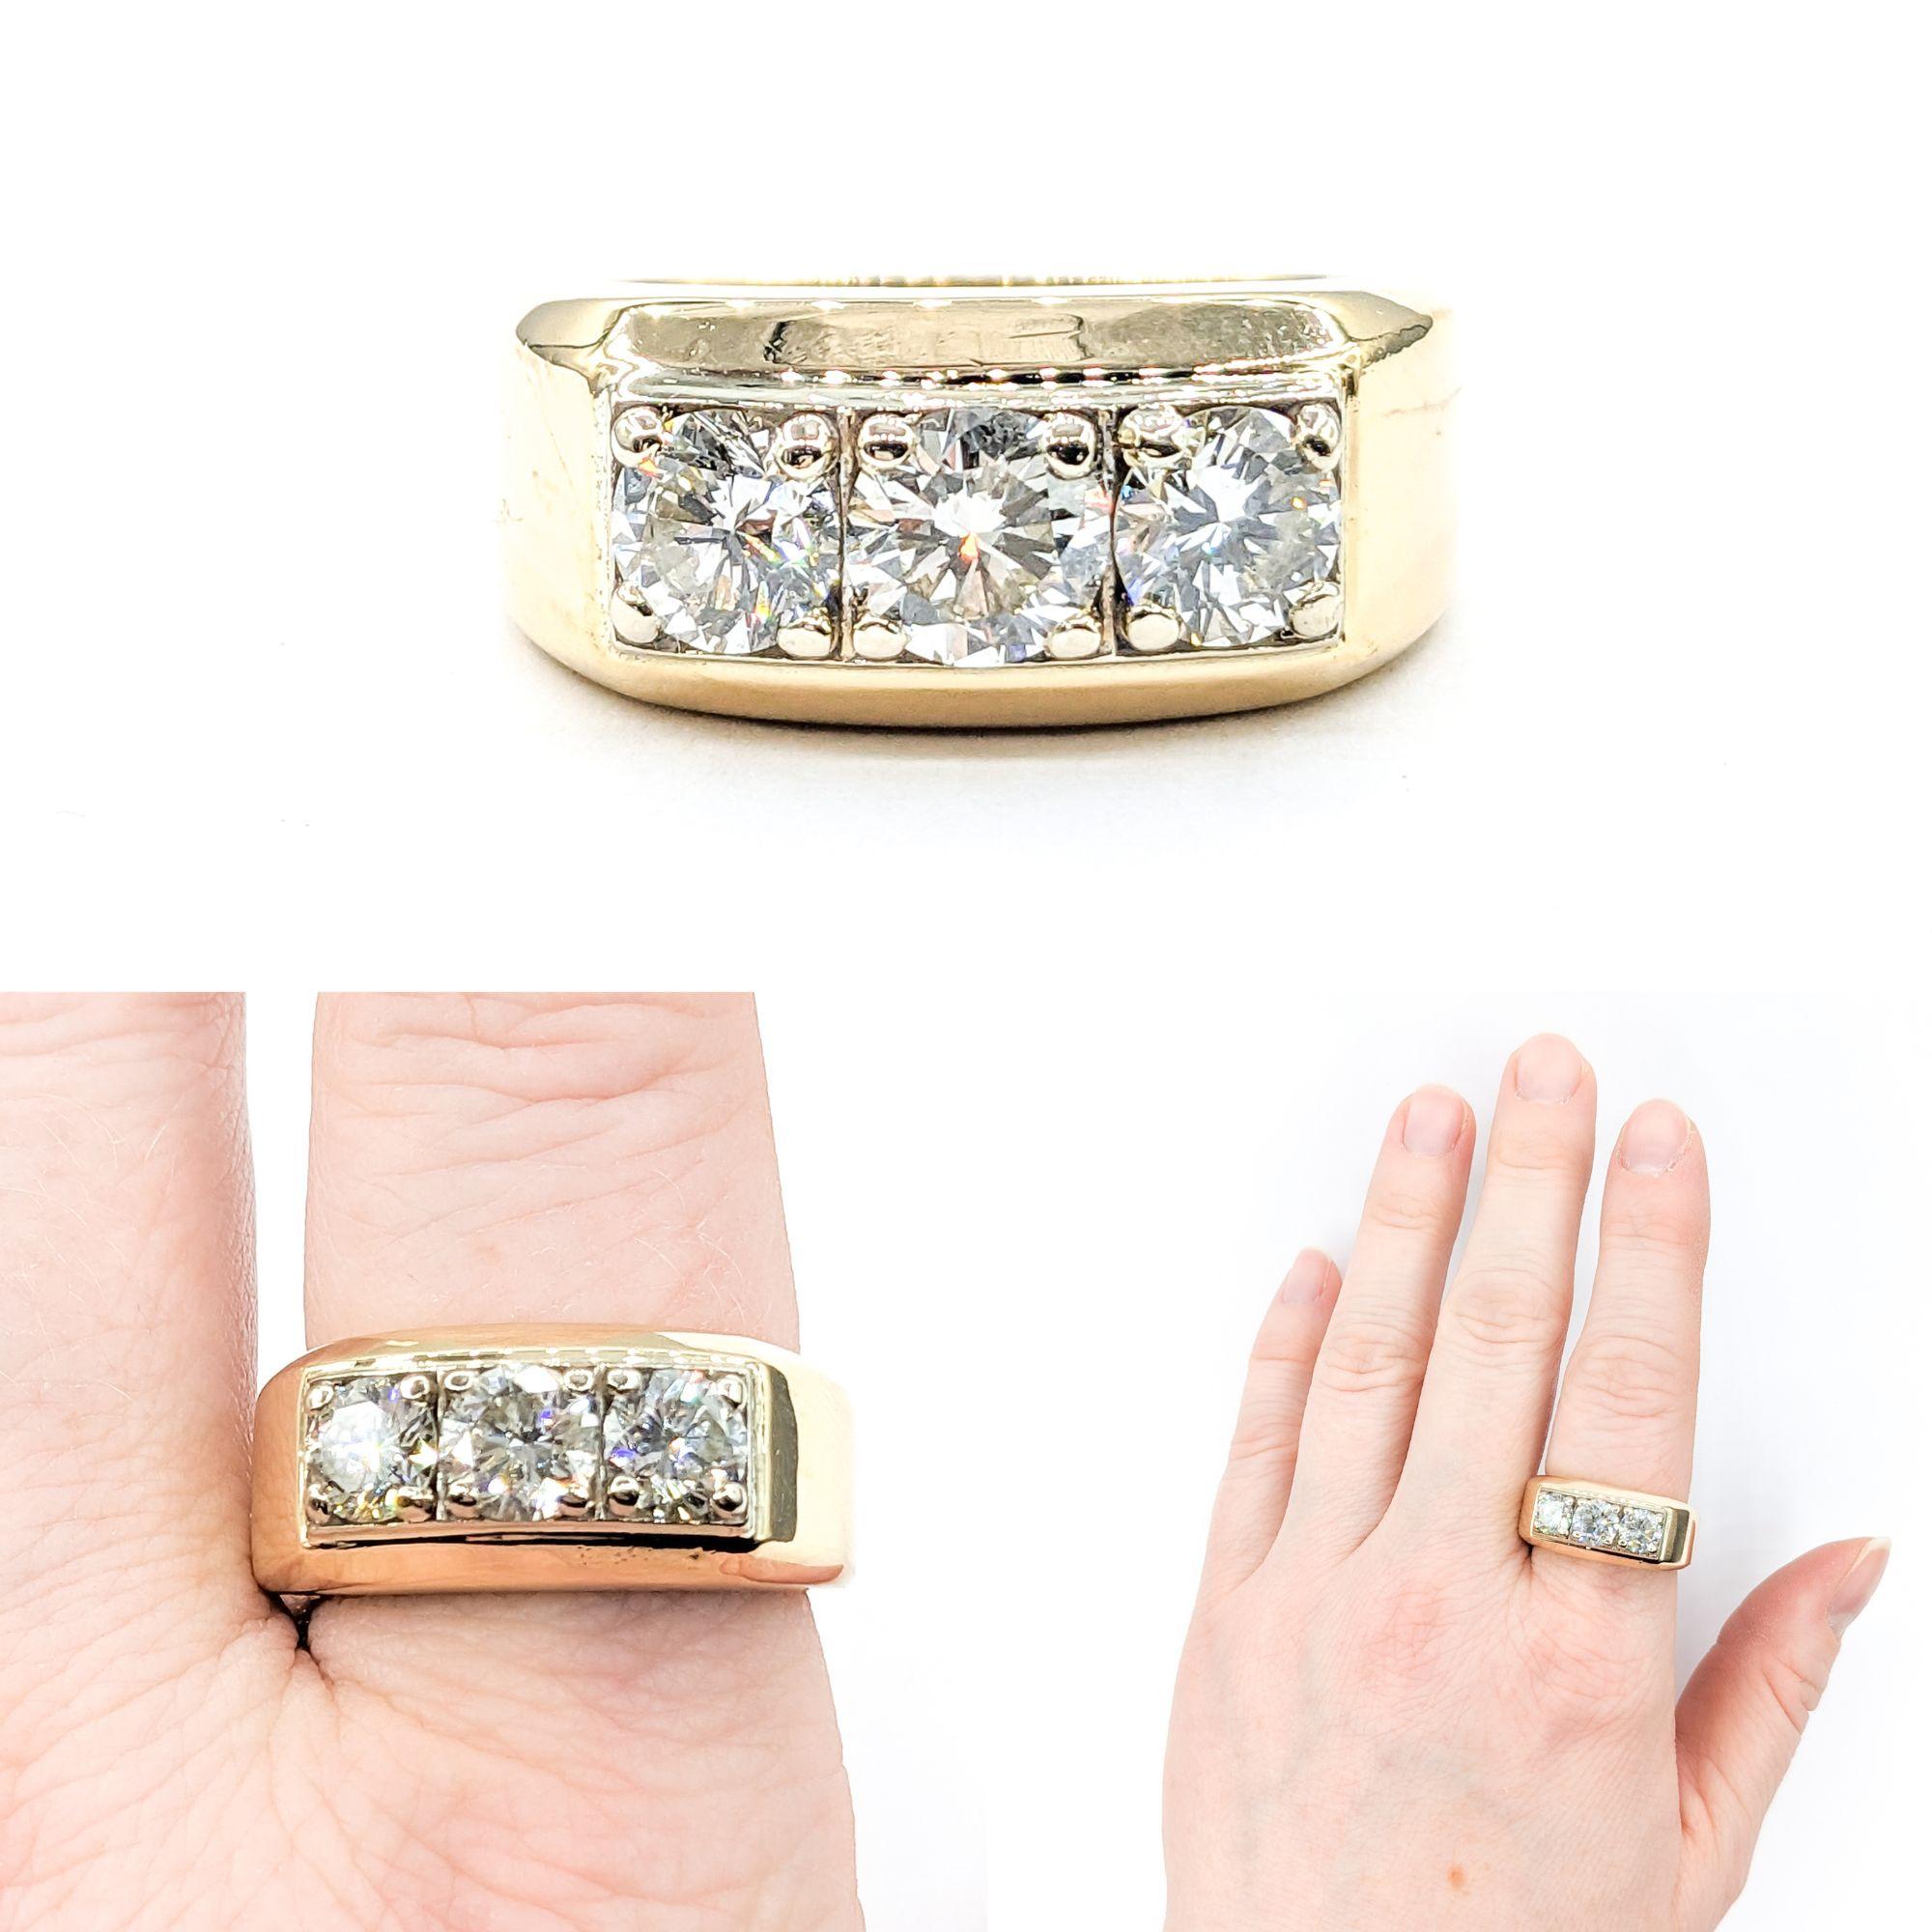 Herren 2,30ctw Diamant 3 Stein Einstellung Ring in Gelbgold

Diese exquisite Diamond Fashion Ring ist fein in 14kt Gelbgold gefertigt und verfügt über eine grandiose insgesamt 2,30 Karat von Diamanten in einem Herren-3-Stein-Fassung. Diese Diamanten